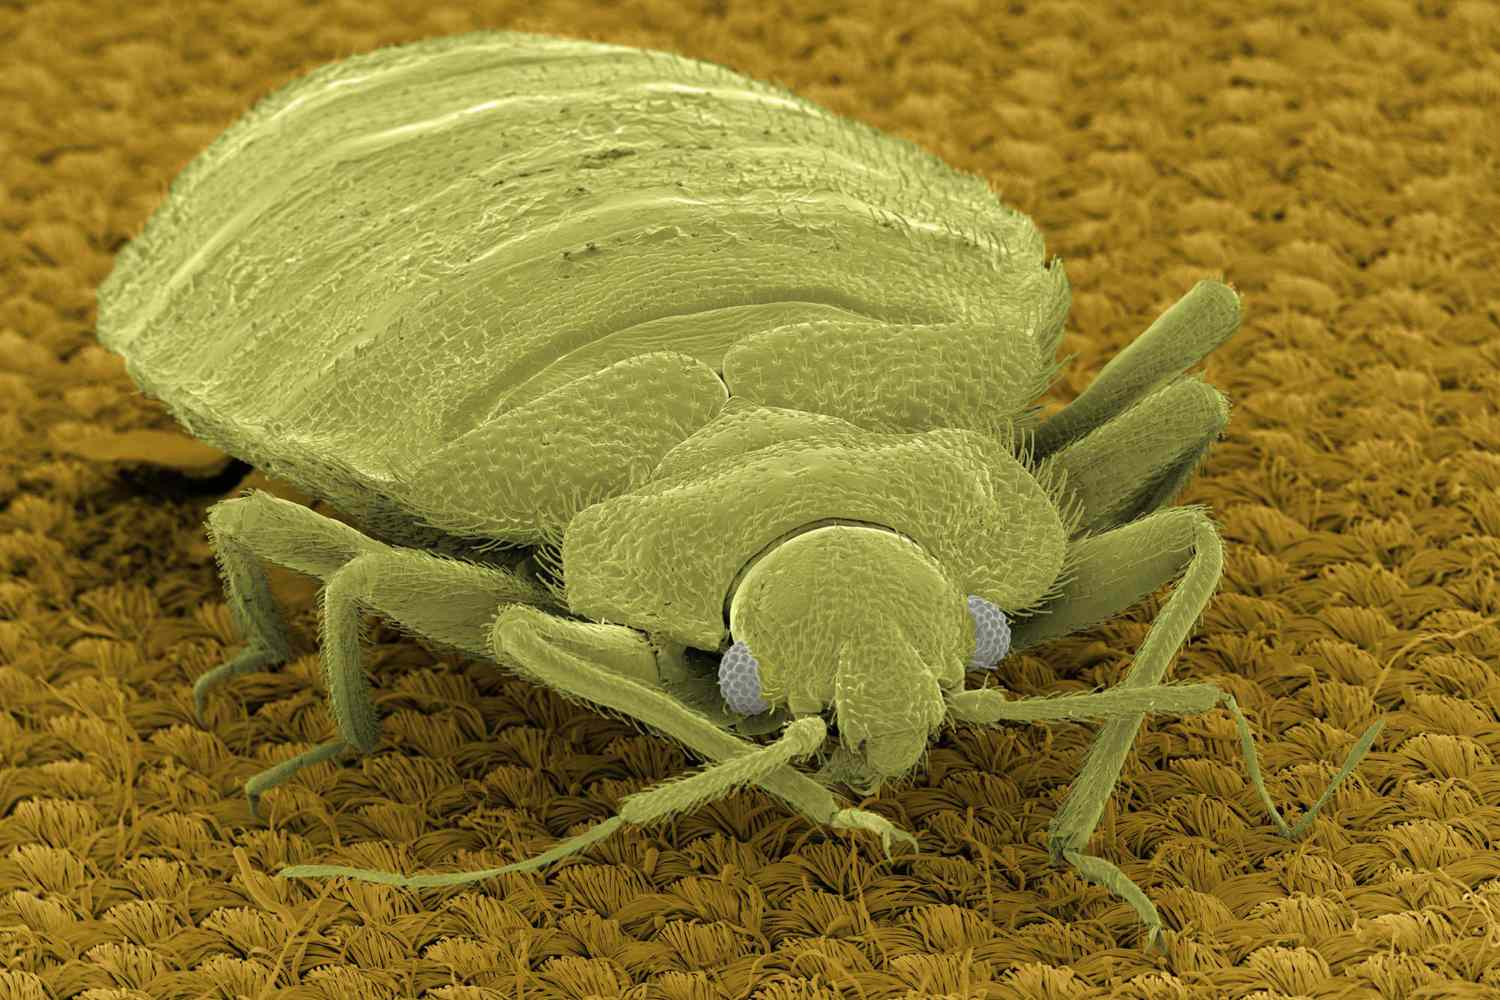 SEM Micrograph of bedbug on fabric